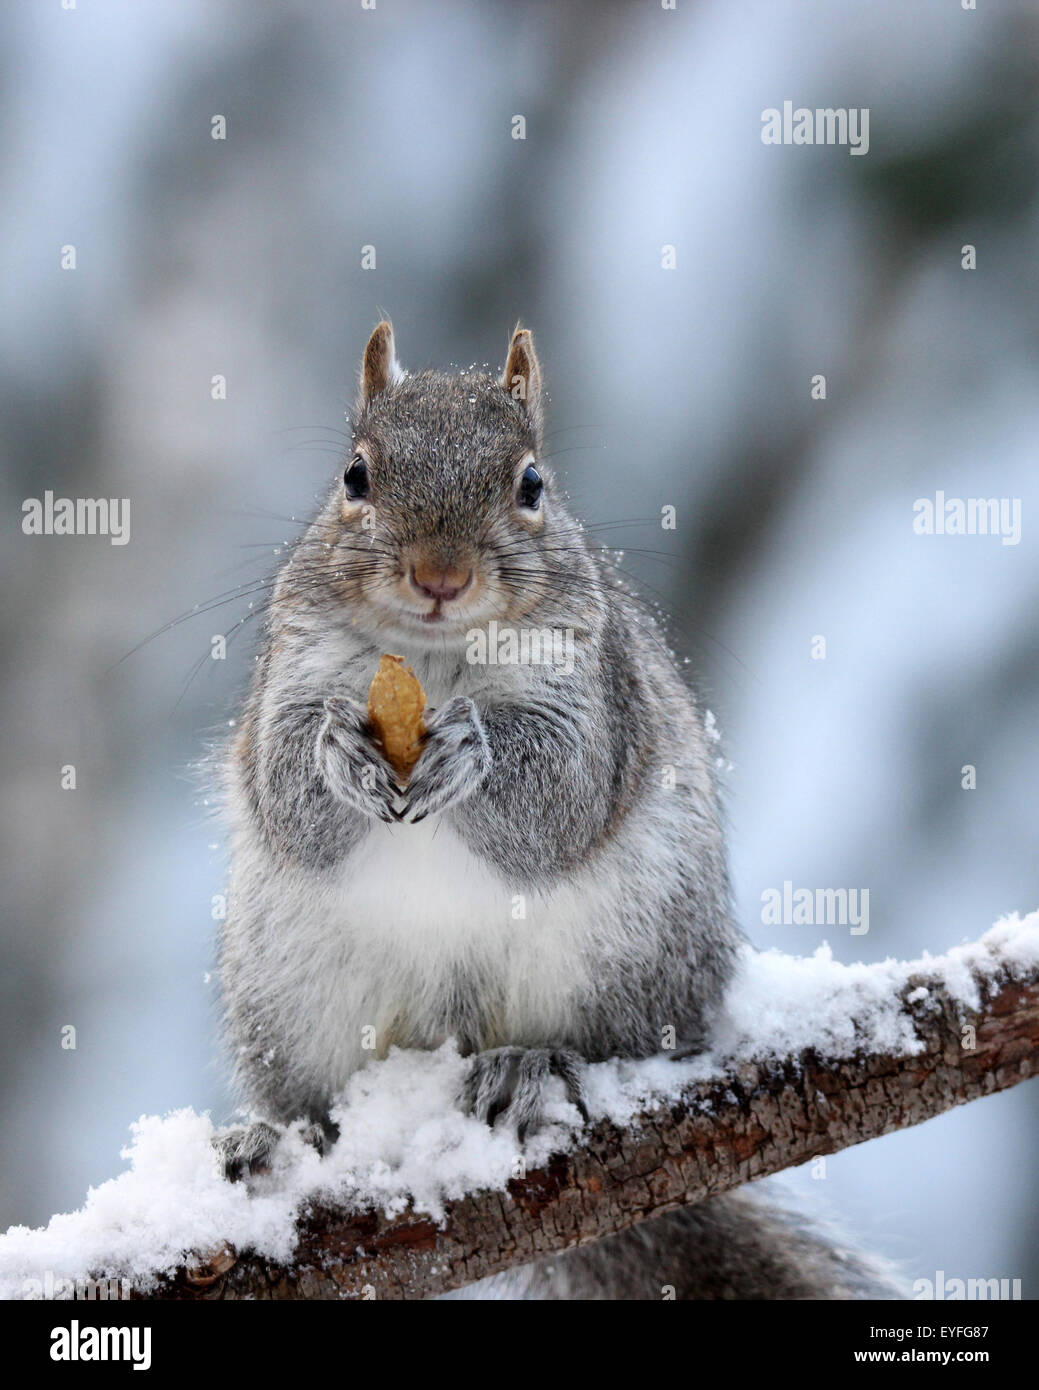 Un Americano di scoiattolo grigio (Sciurus carolinensis) tenendo un dado nel suo zampe in un giorno di neve in inverno Foto Stock